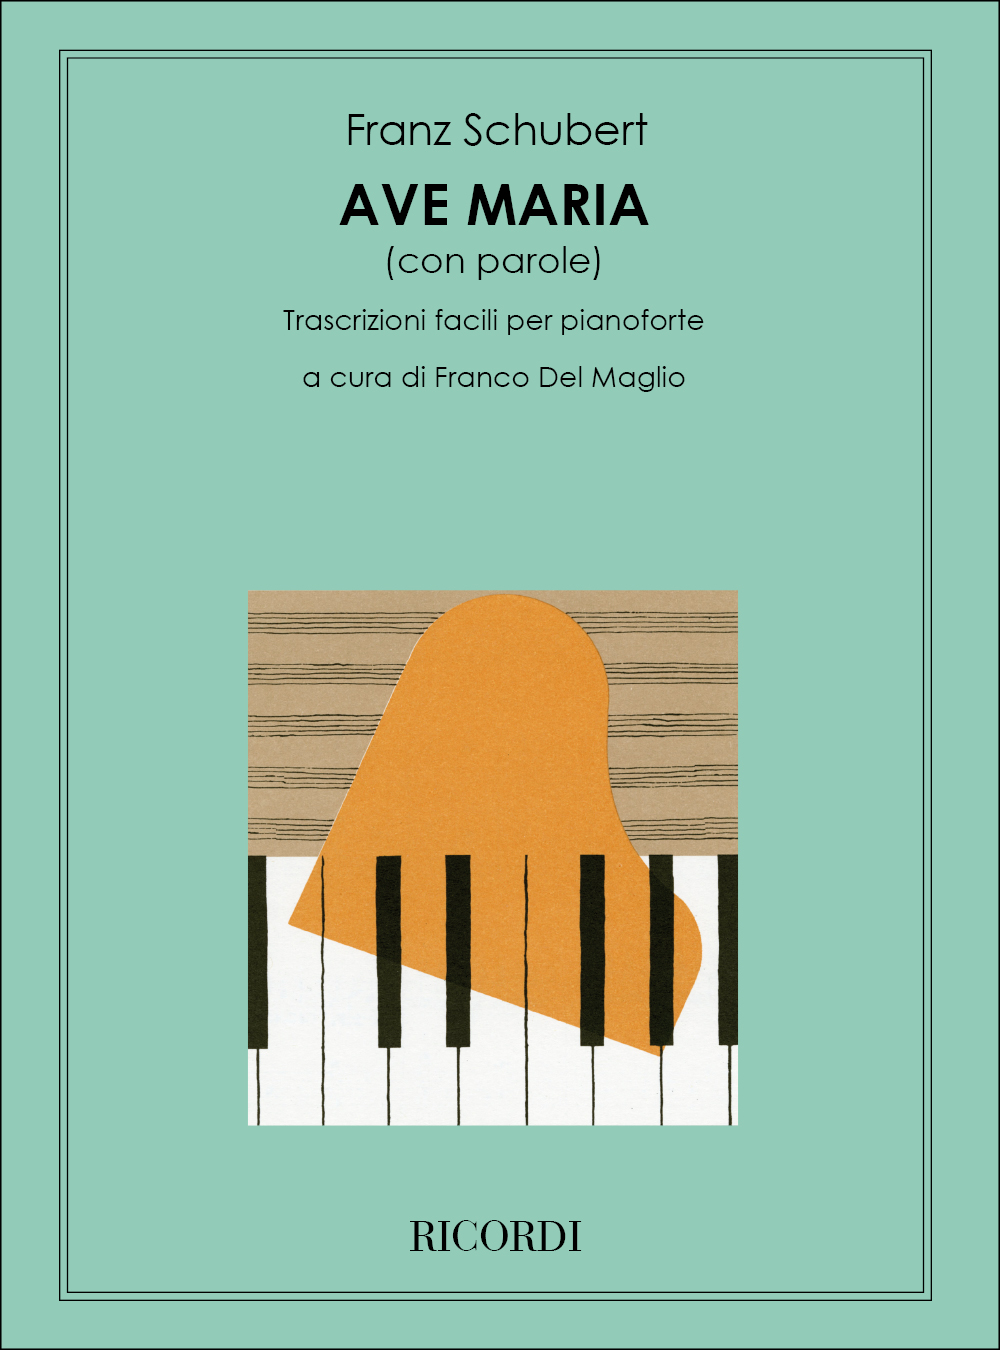 Franz Schubert: Ave Maria Op. 52 N.6 D. 839: Piano